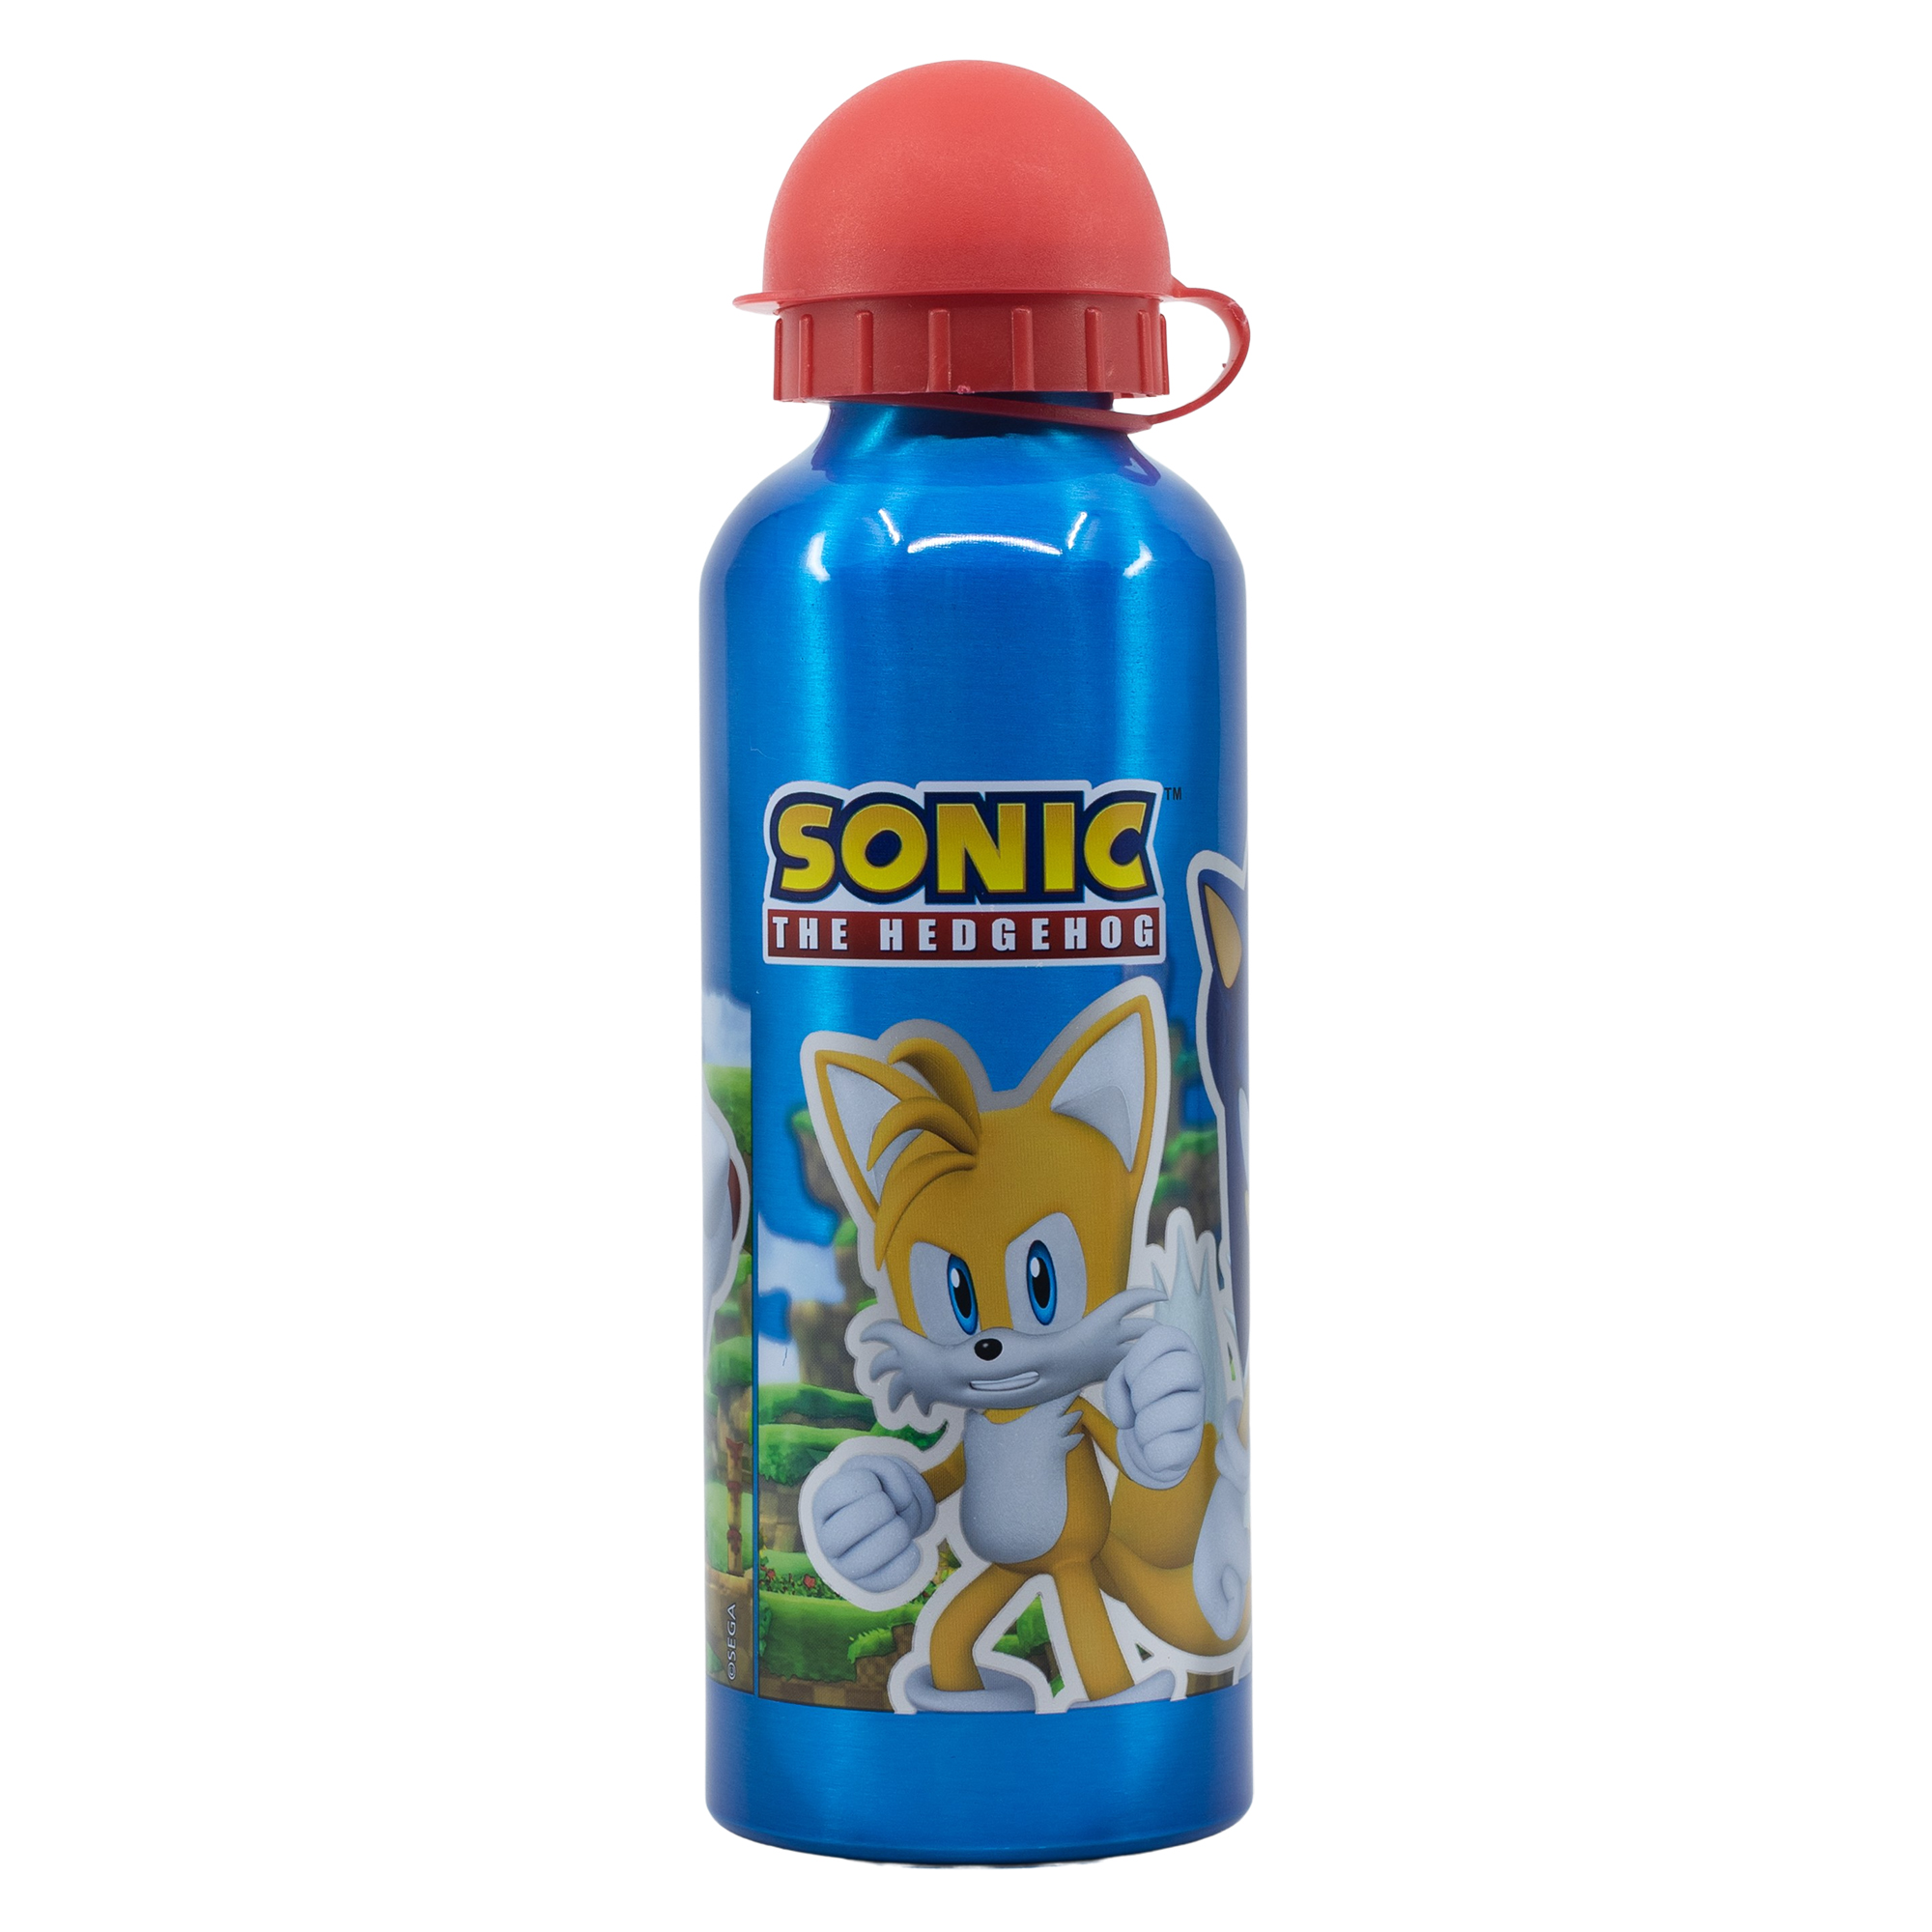 Sonic 530ml Aluminum Bottle for Children 